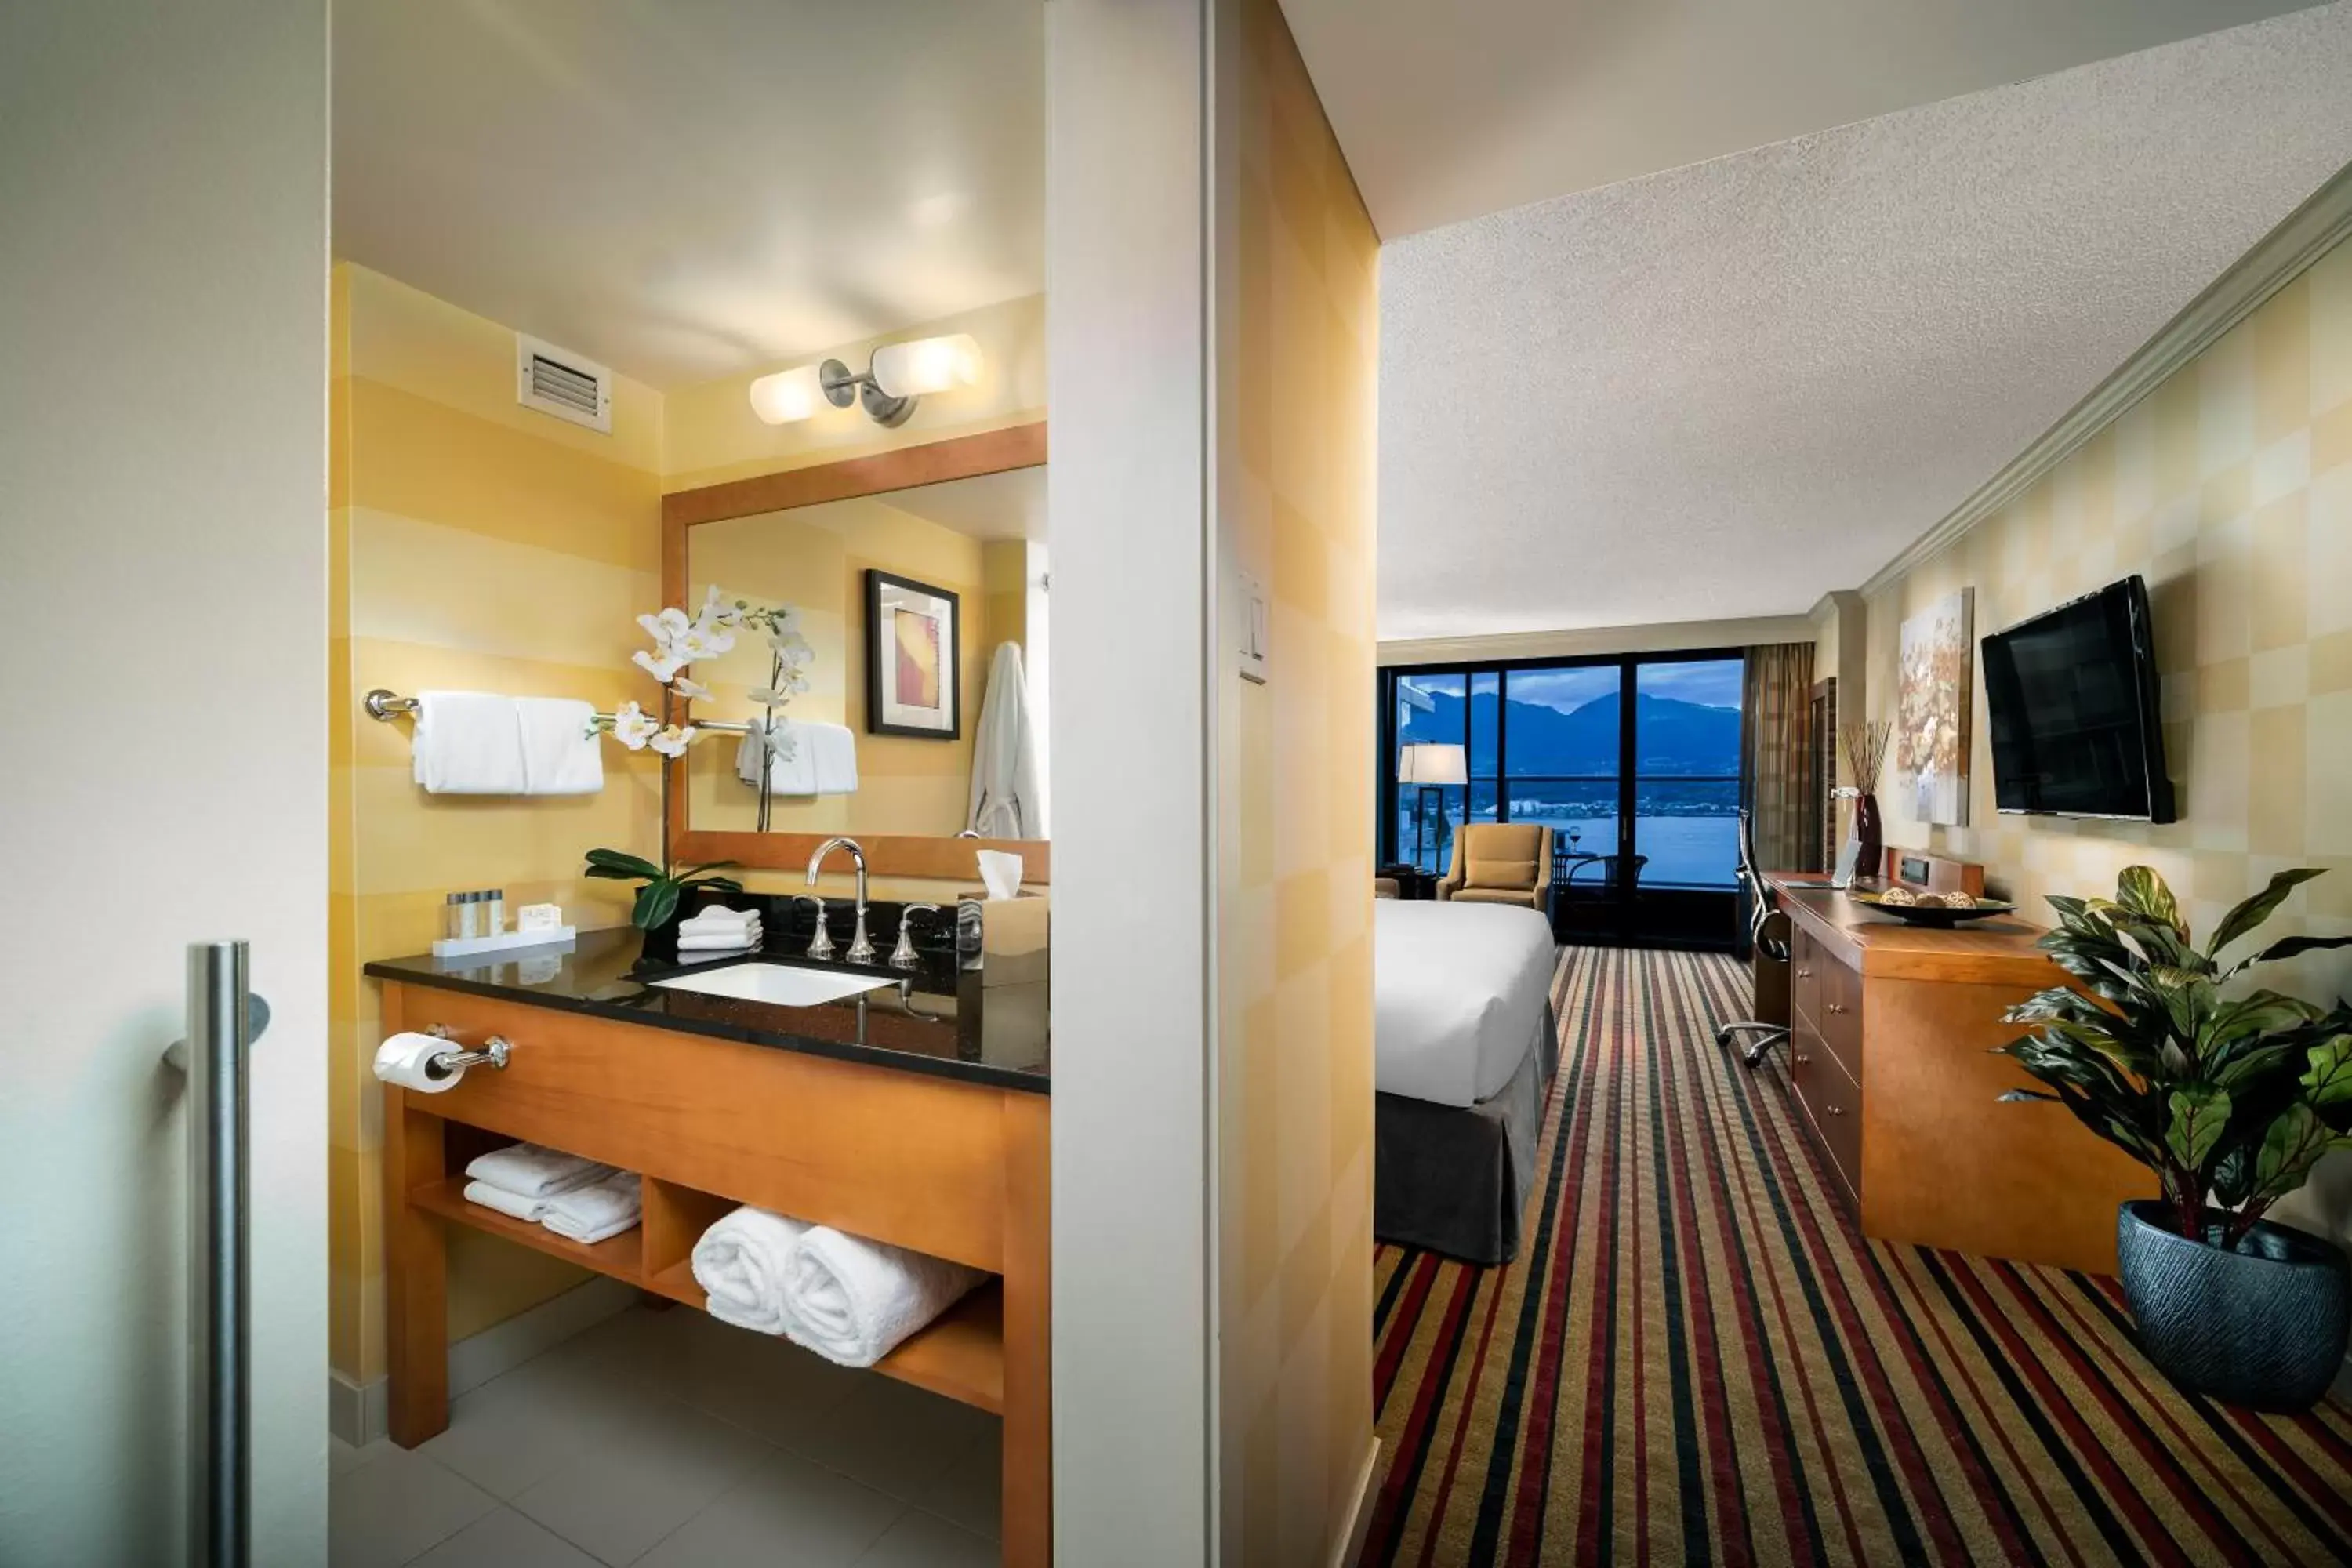 Bedroom in Pinnacle Hotel Harbourfront